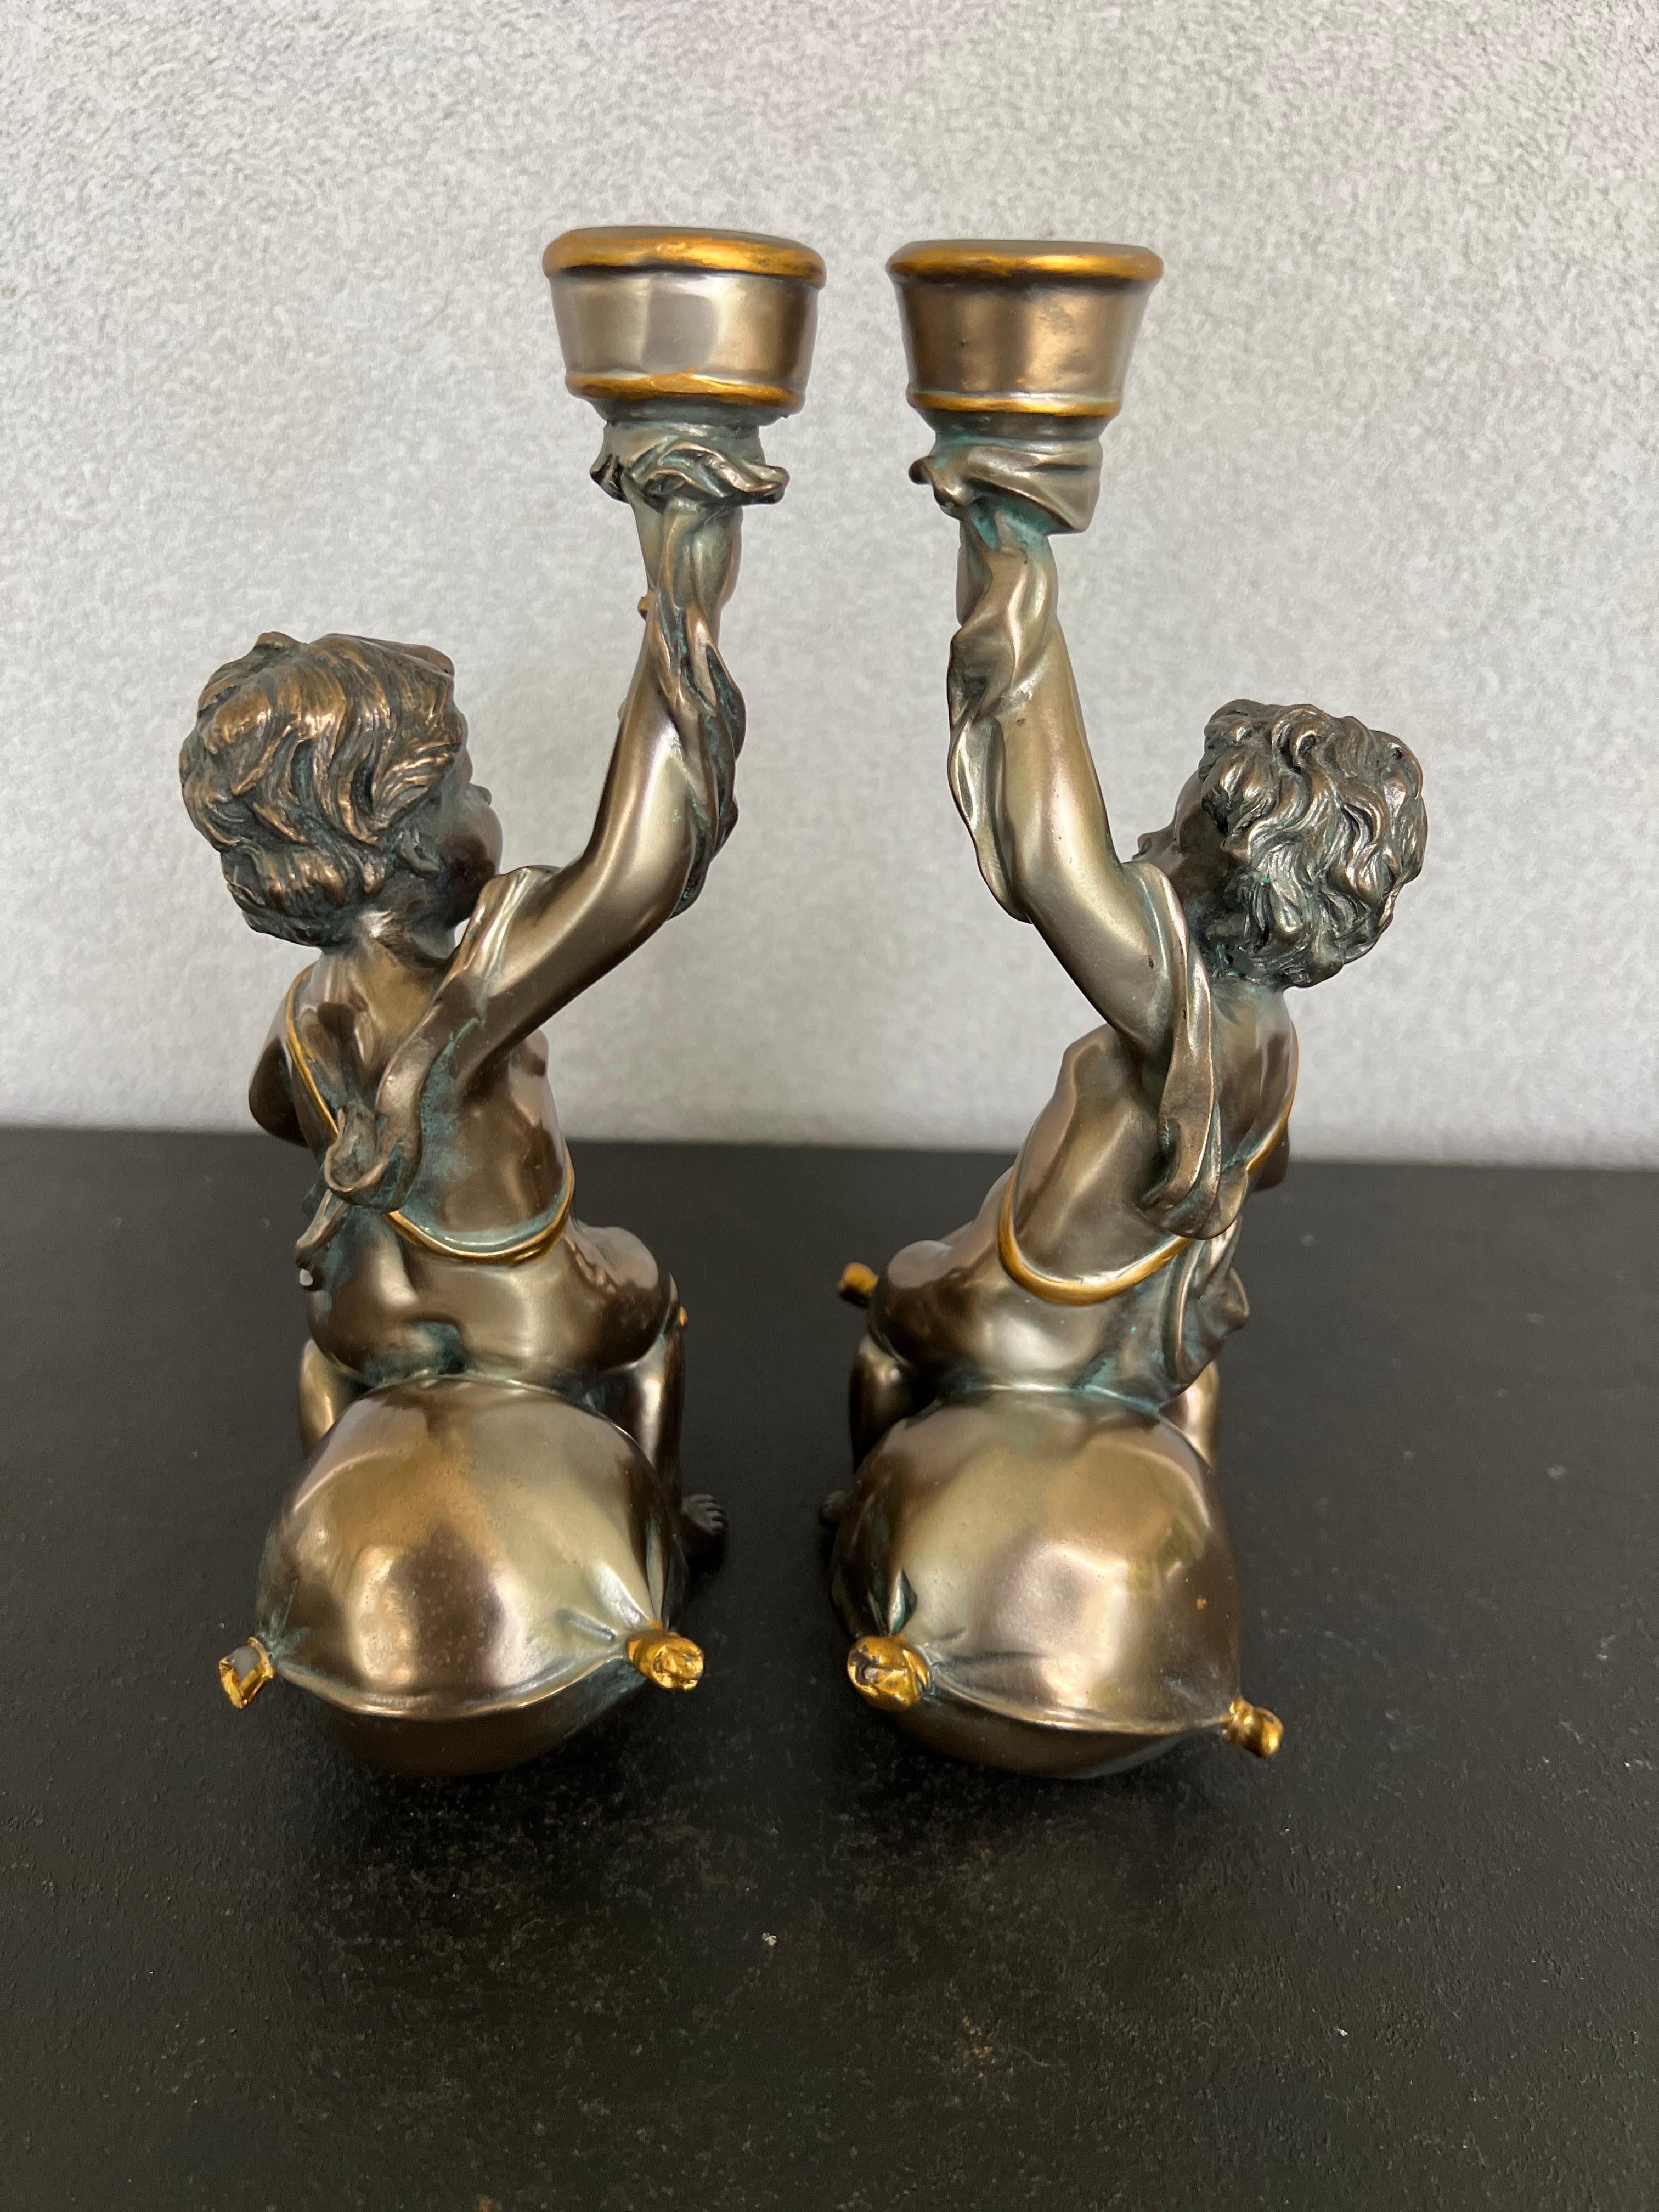 Magnifique paire de chandeliers Bacchus de couleur bronze antique, je crois qu'ils sont en résine. De beaux détails 
Bacchus était le dieu romain de l'agriculture, du vin et de la fertilité, équivalent du dieu grec Dionysos.
Une paire idéale pour